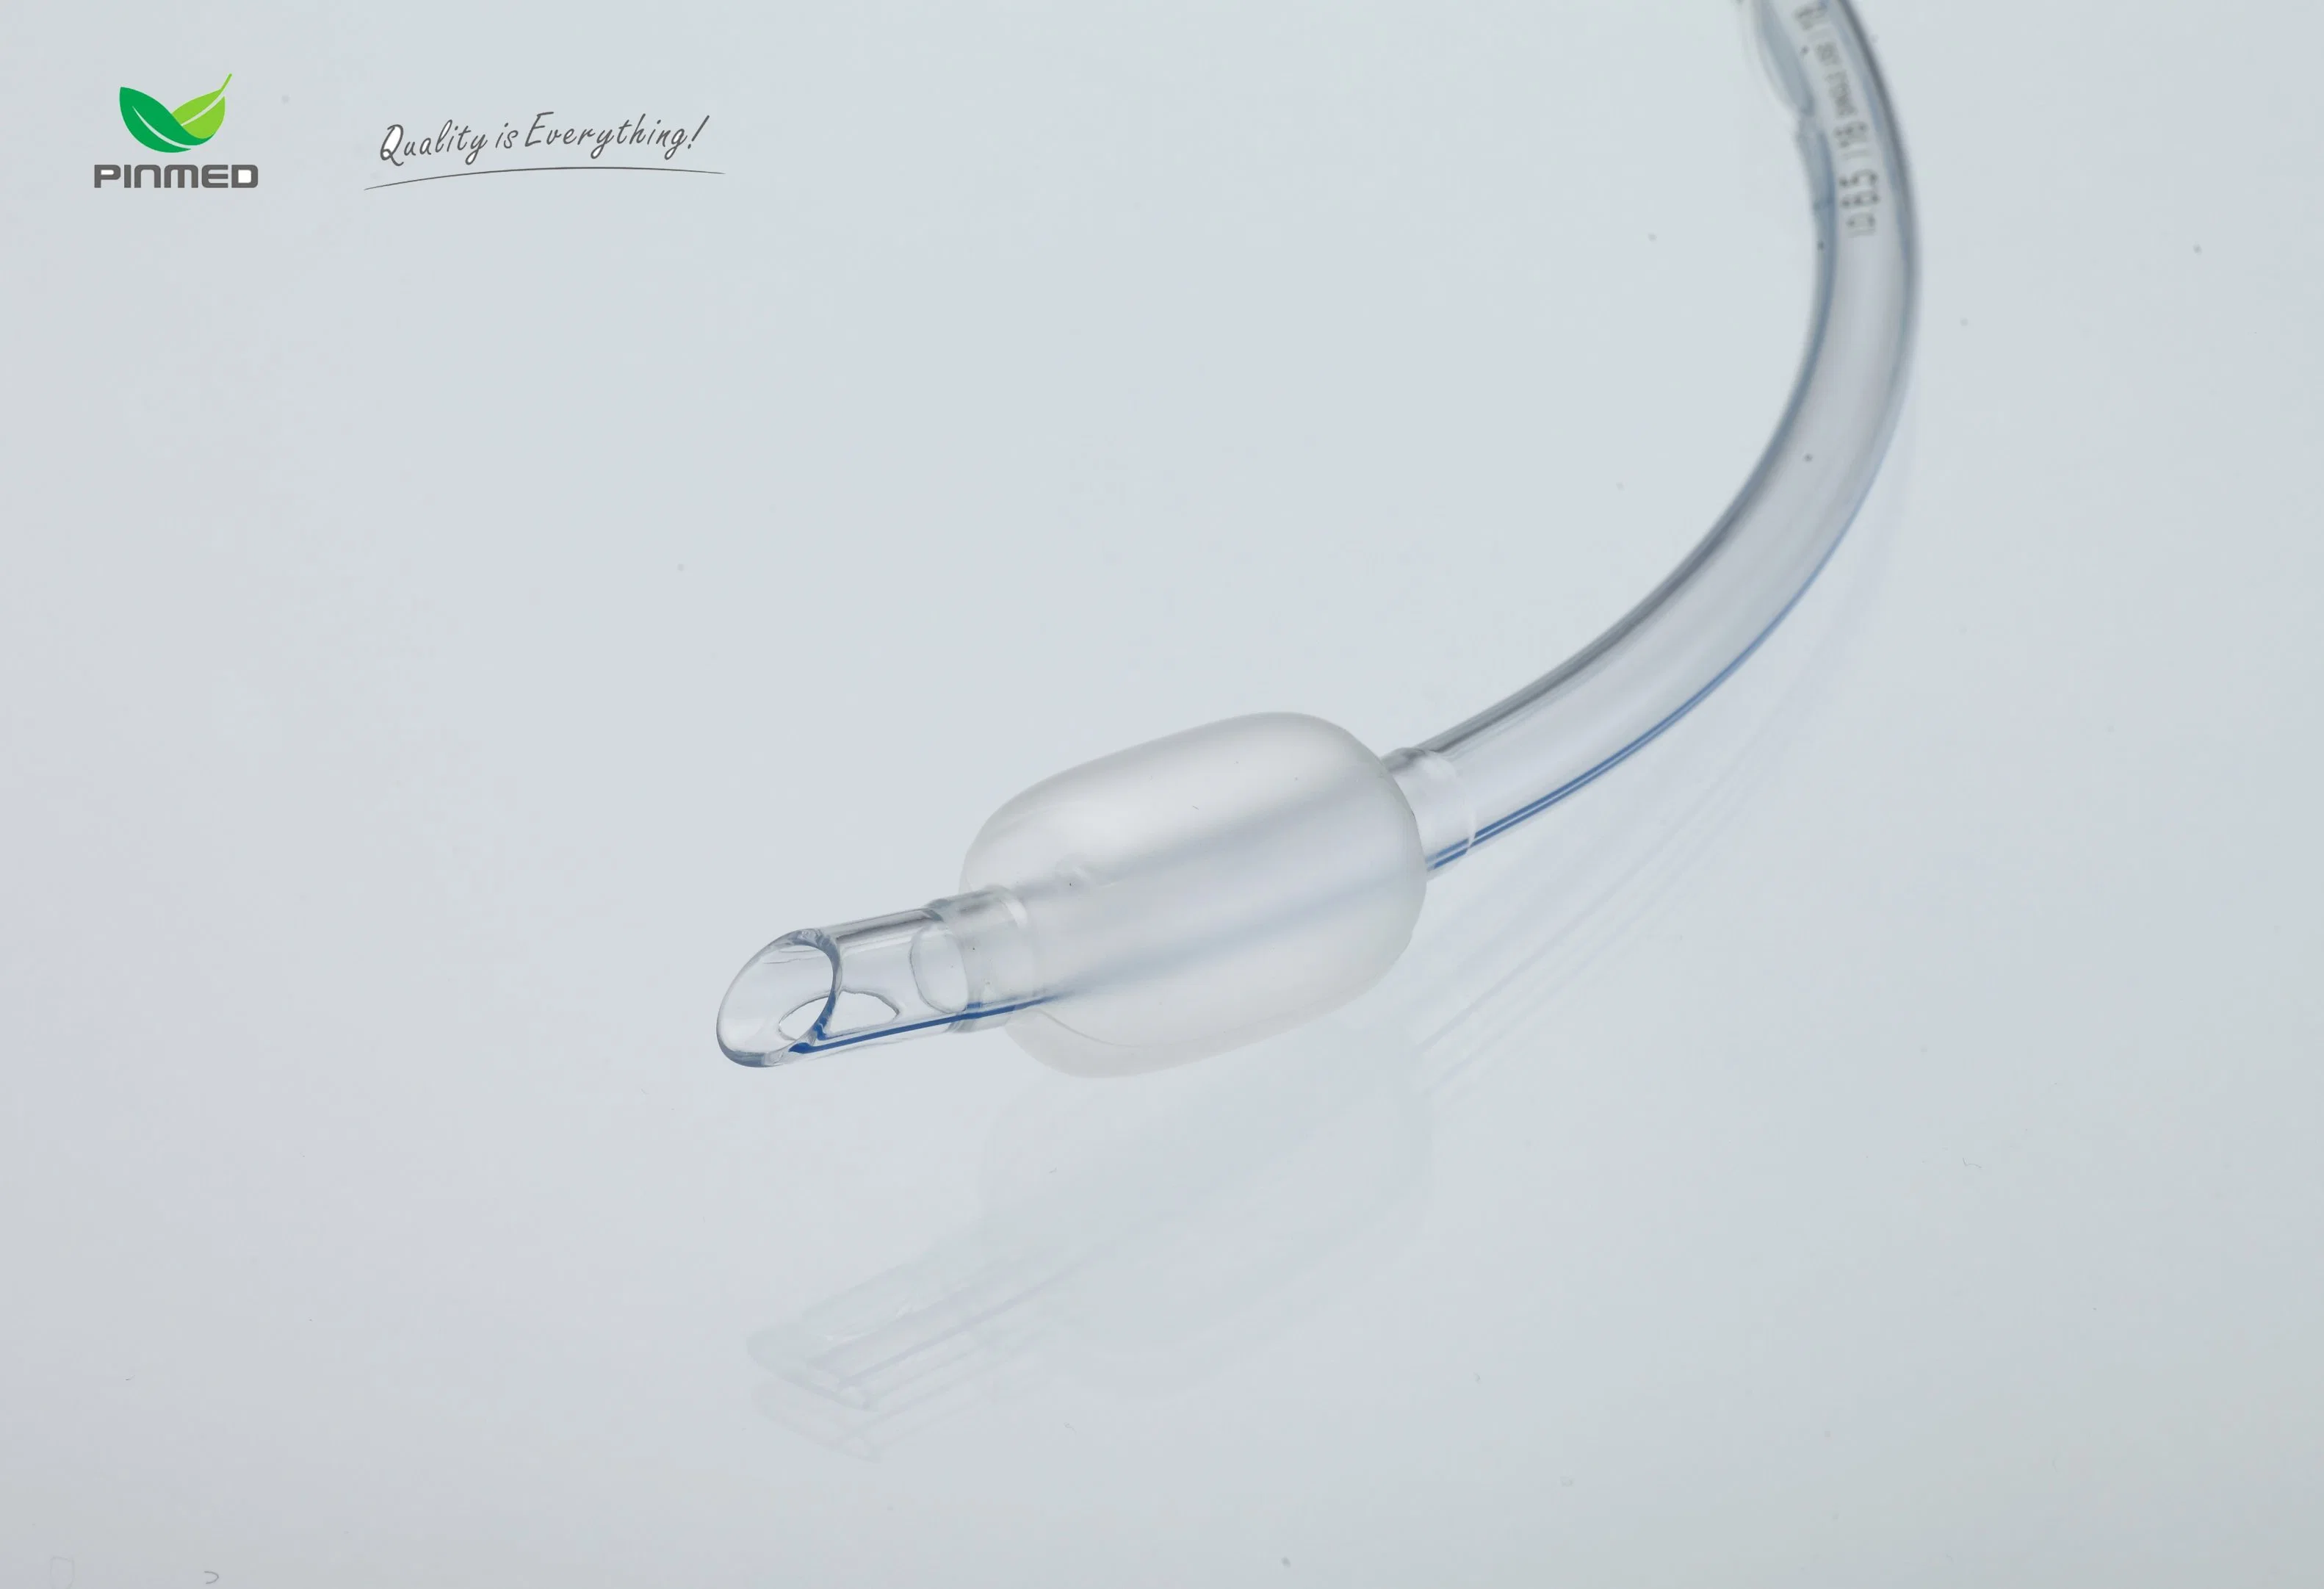 Materiais de PVC tubo endotraqueal/traqueal descartável médico oral com manguito/braçadeira Para intubação nasal e oral